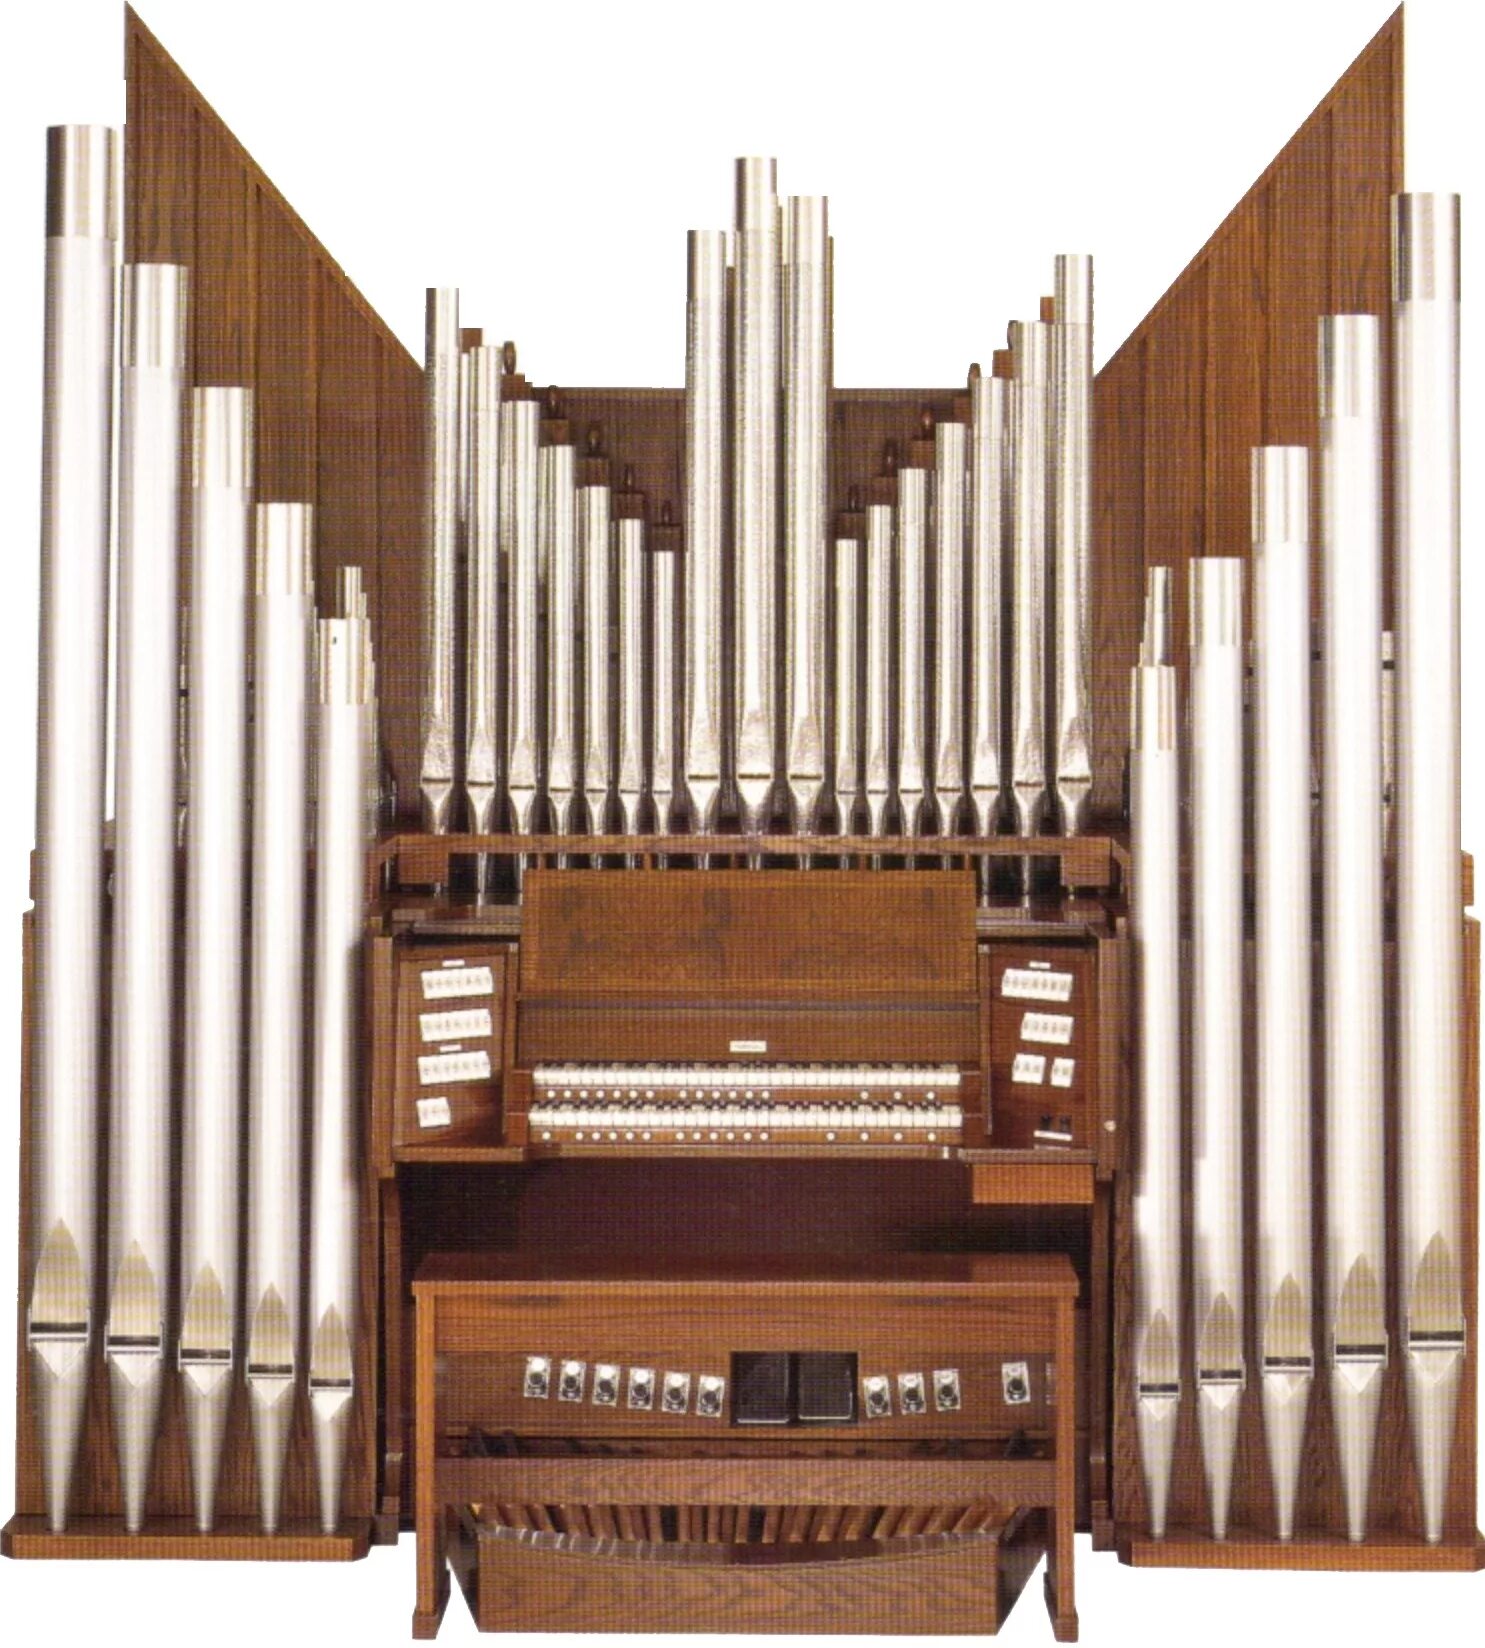 Organ. Органный клавишный духовой музыкальный инструмент. Торган музыкальный инструмент-. Аркан музыкальный инструмент. Ора инструмент музыкальный.